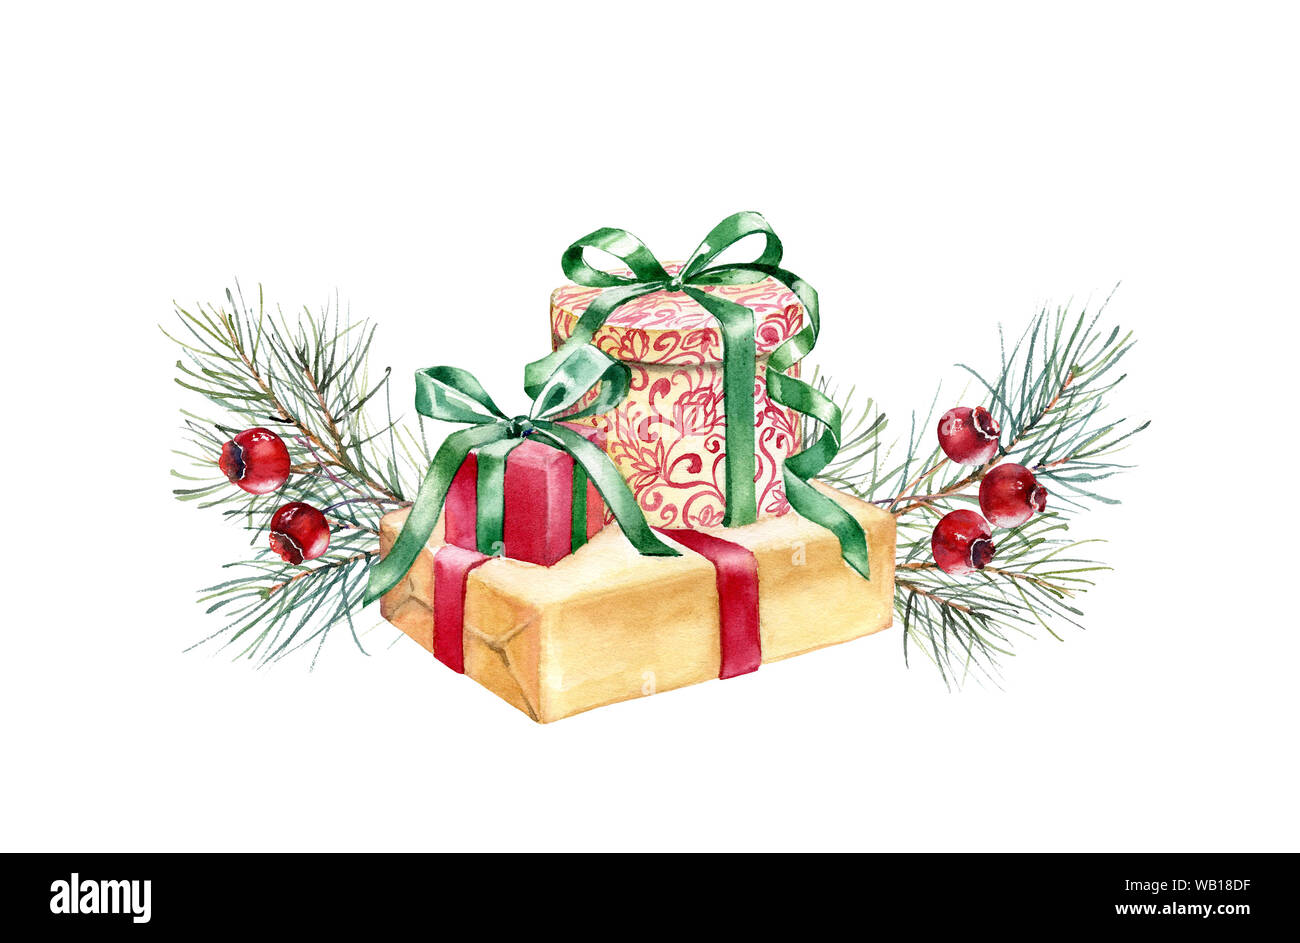 Composition aquarelle de Noël. Illustration peinte à la main avec des arbres de pin, fruits rouges et présente. Cadeau de vacances d'hiver isolé sur fond blanc Banque D'Images